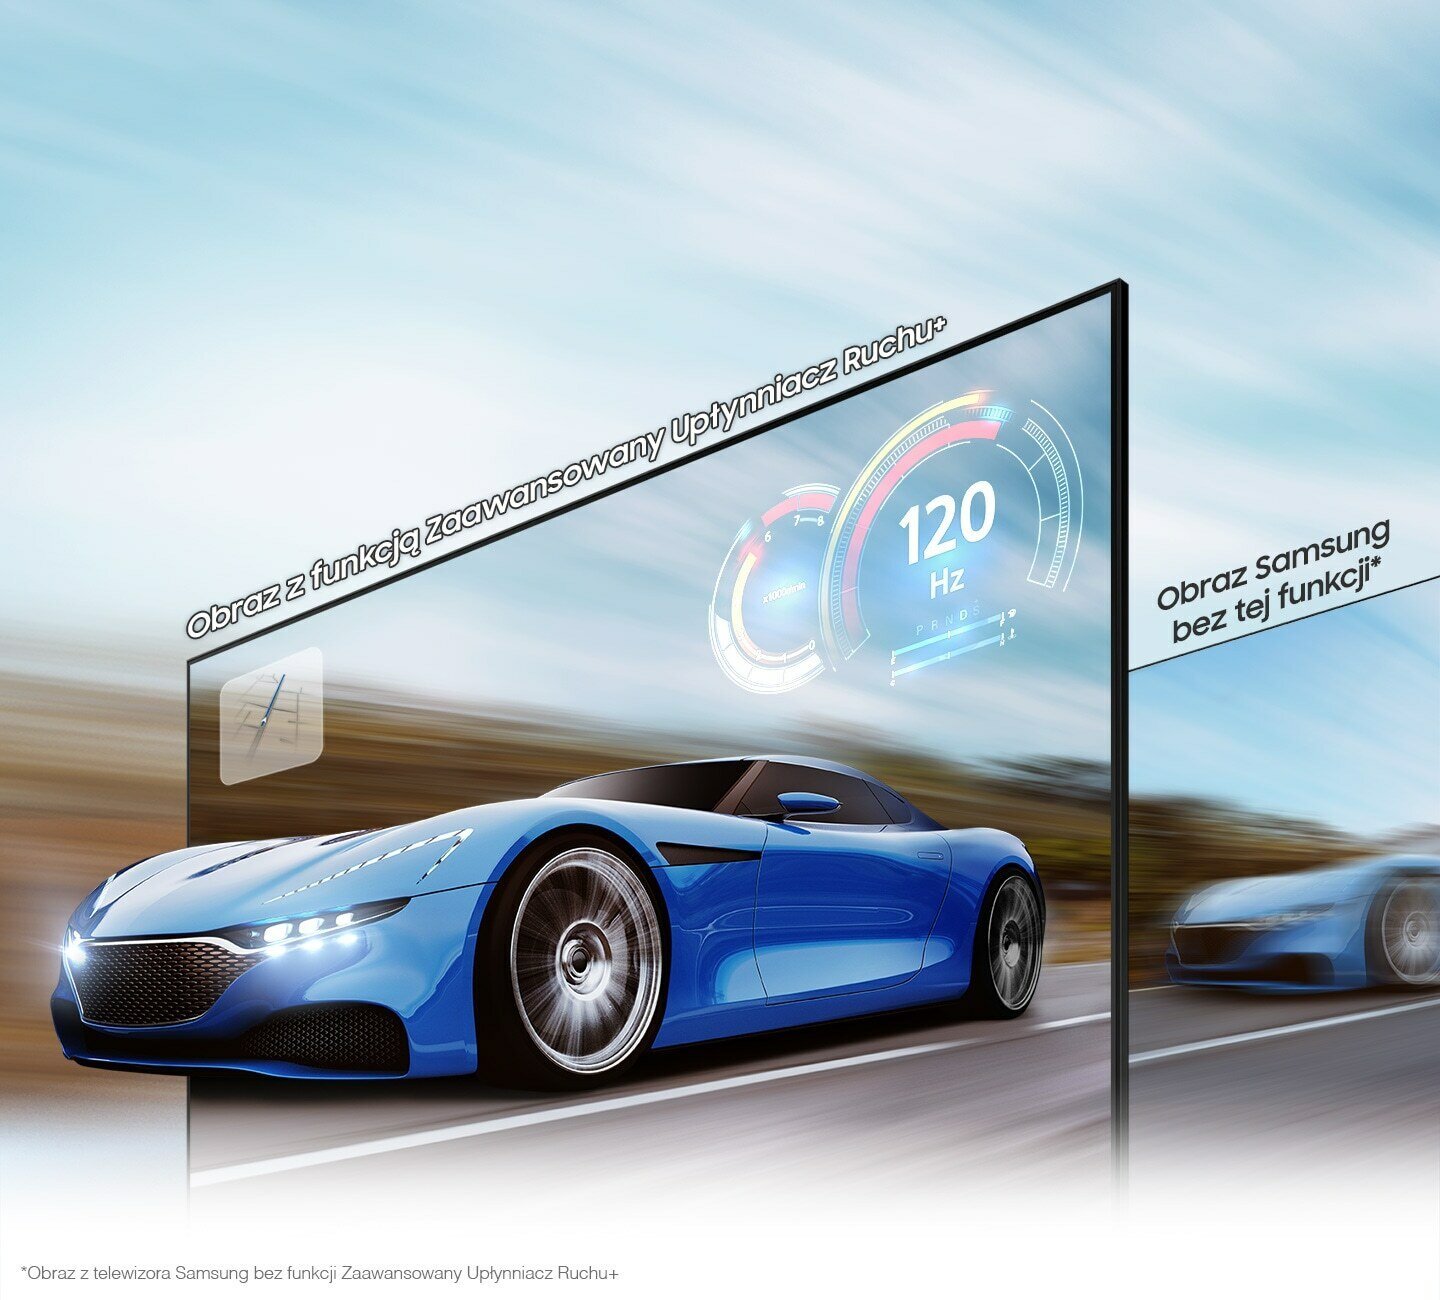 Ścigający się samochód wygląda o wiele wyraźniej na ekranie QLED niż na zwykłym ekranie dzięki Zaawansowanemu Upłynniaczowi Ruchu+ do 120 Hz w 4K. Q80BATXXH